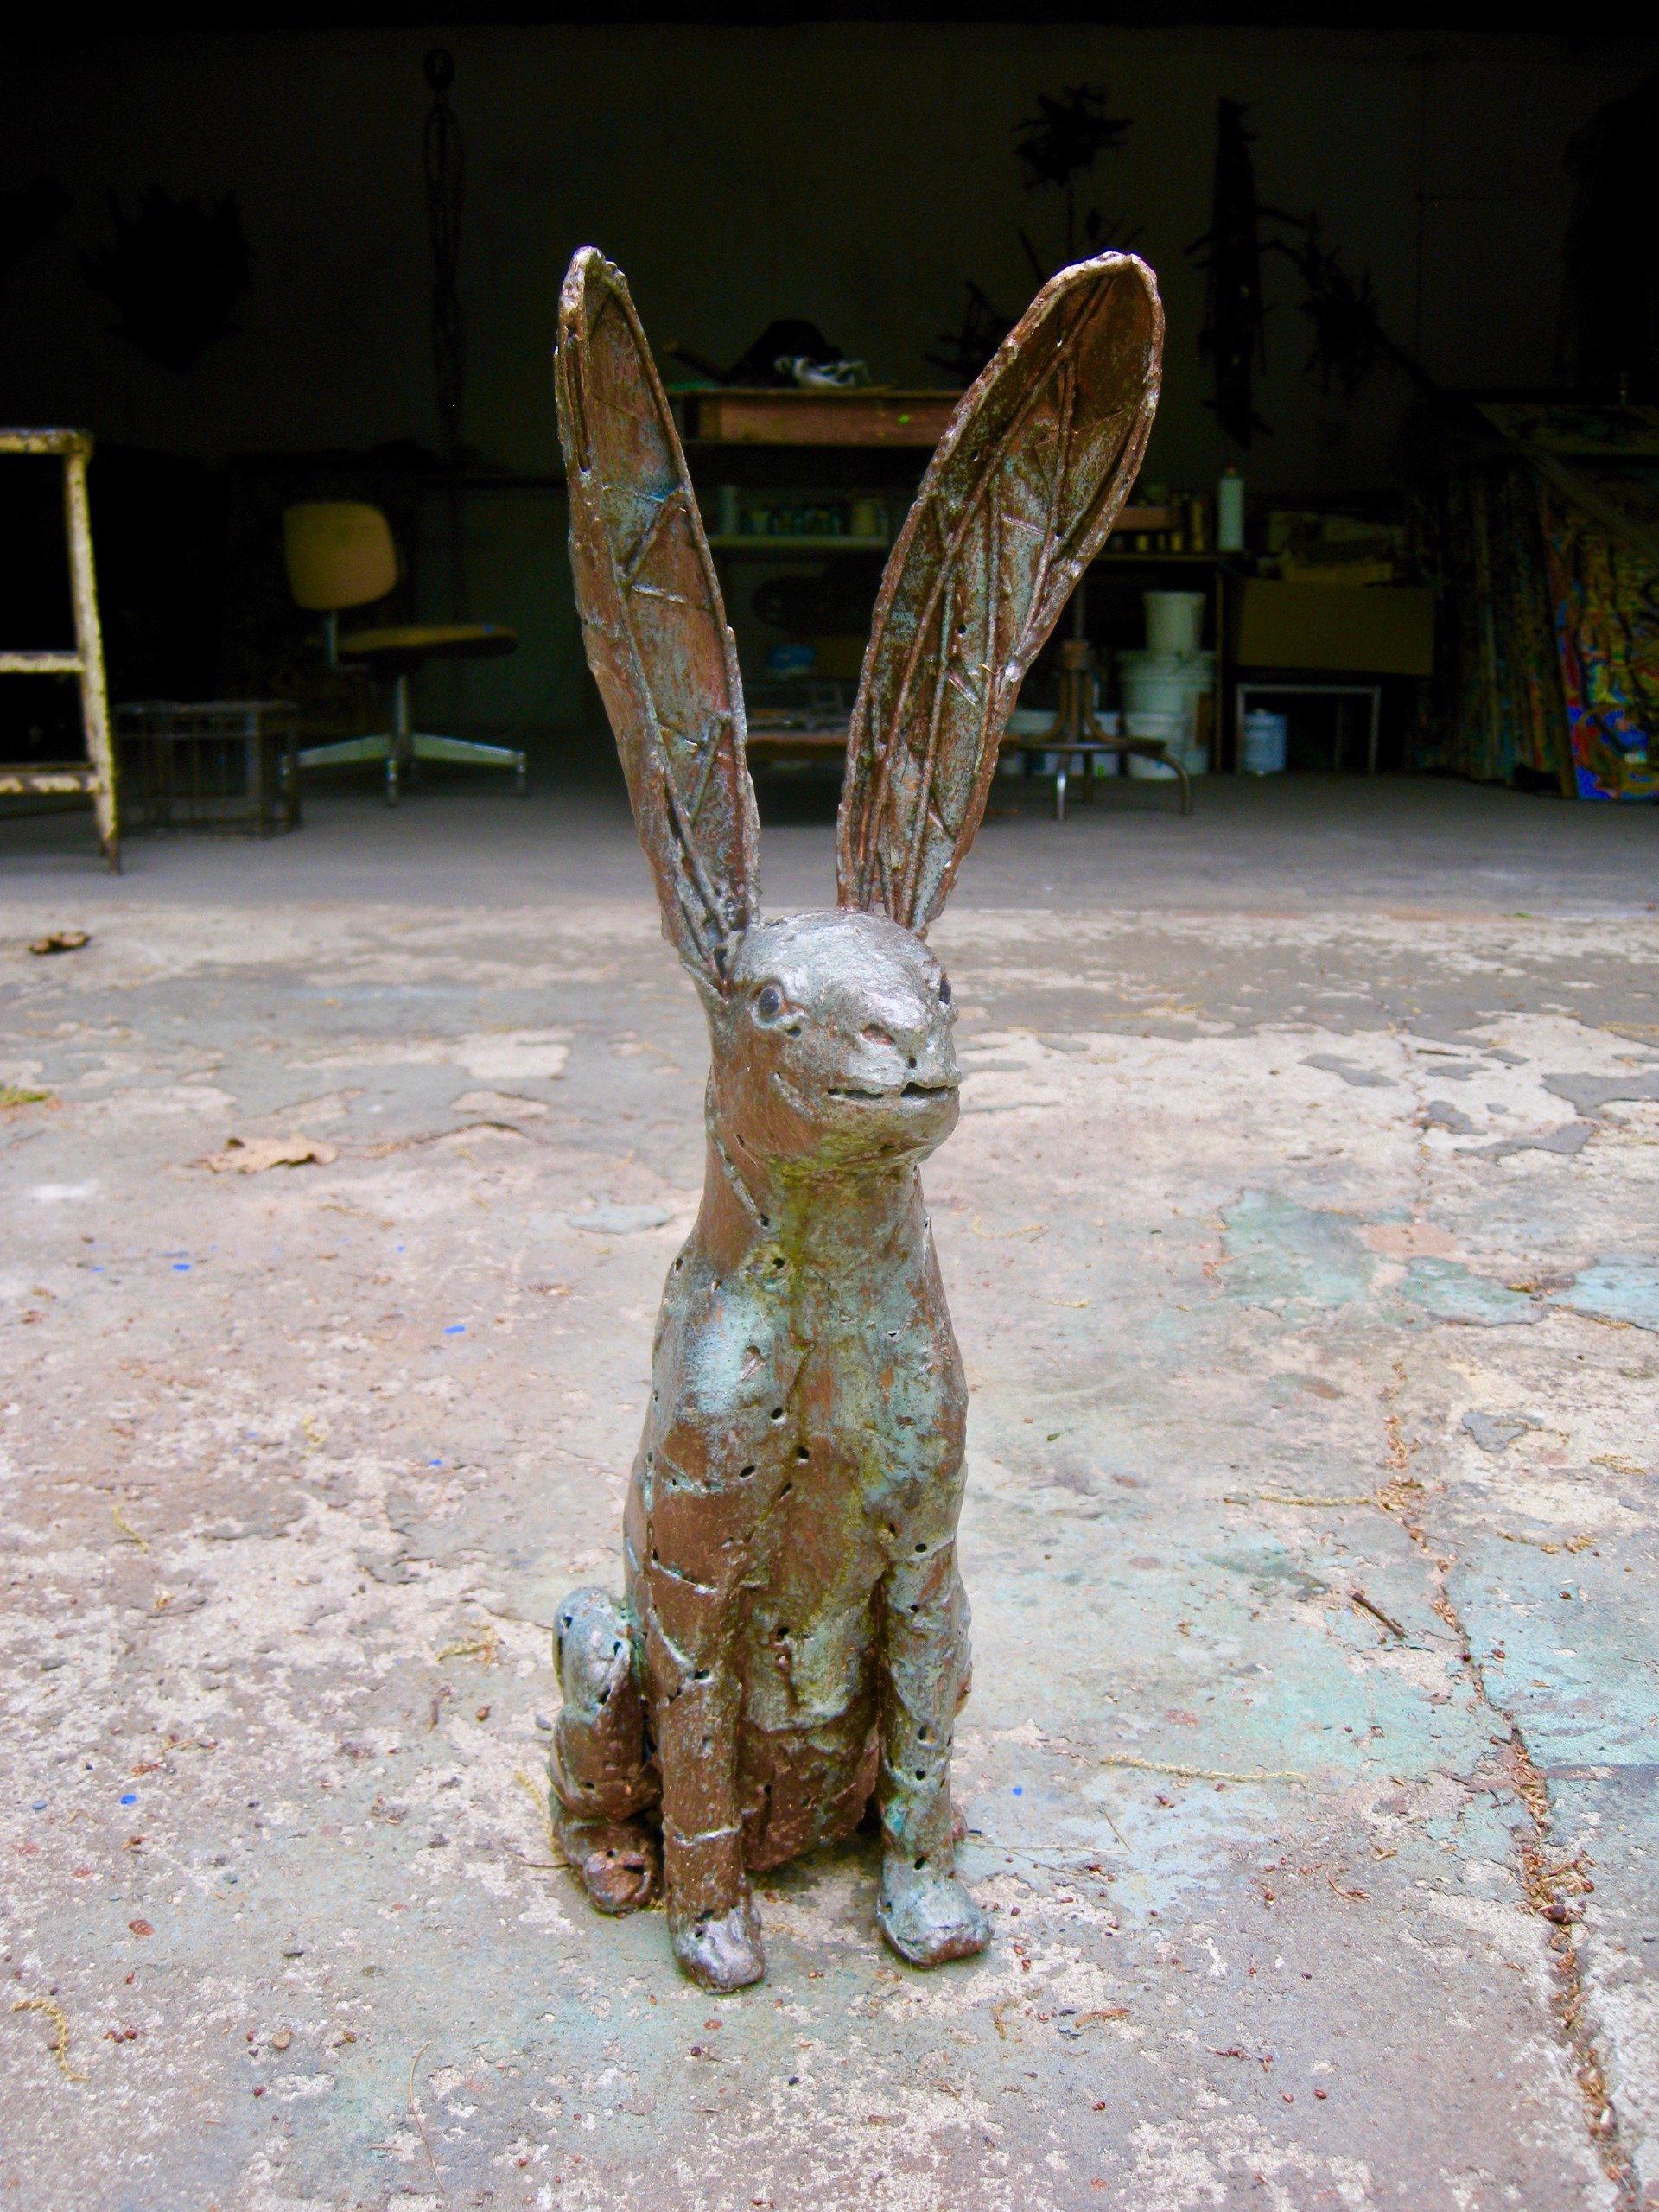 Jack Rabbit 1 by William Allen